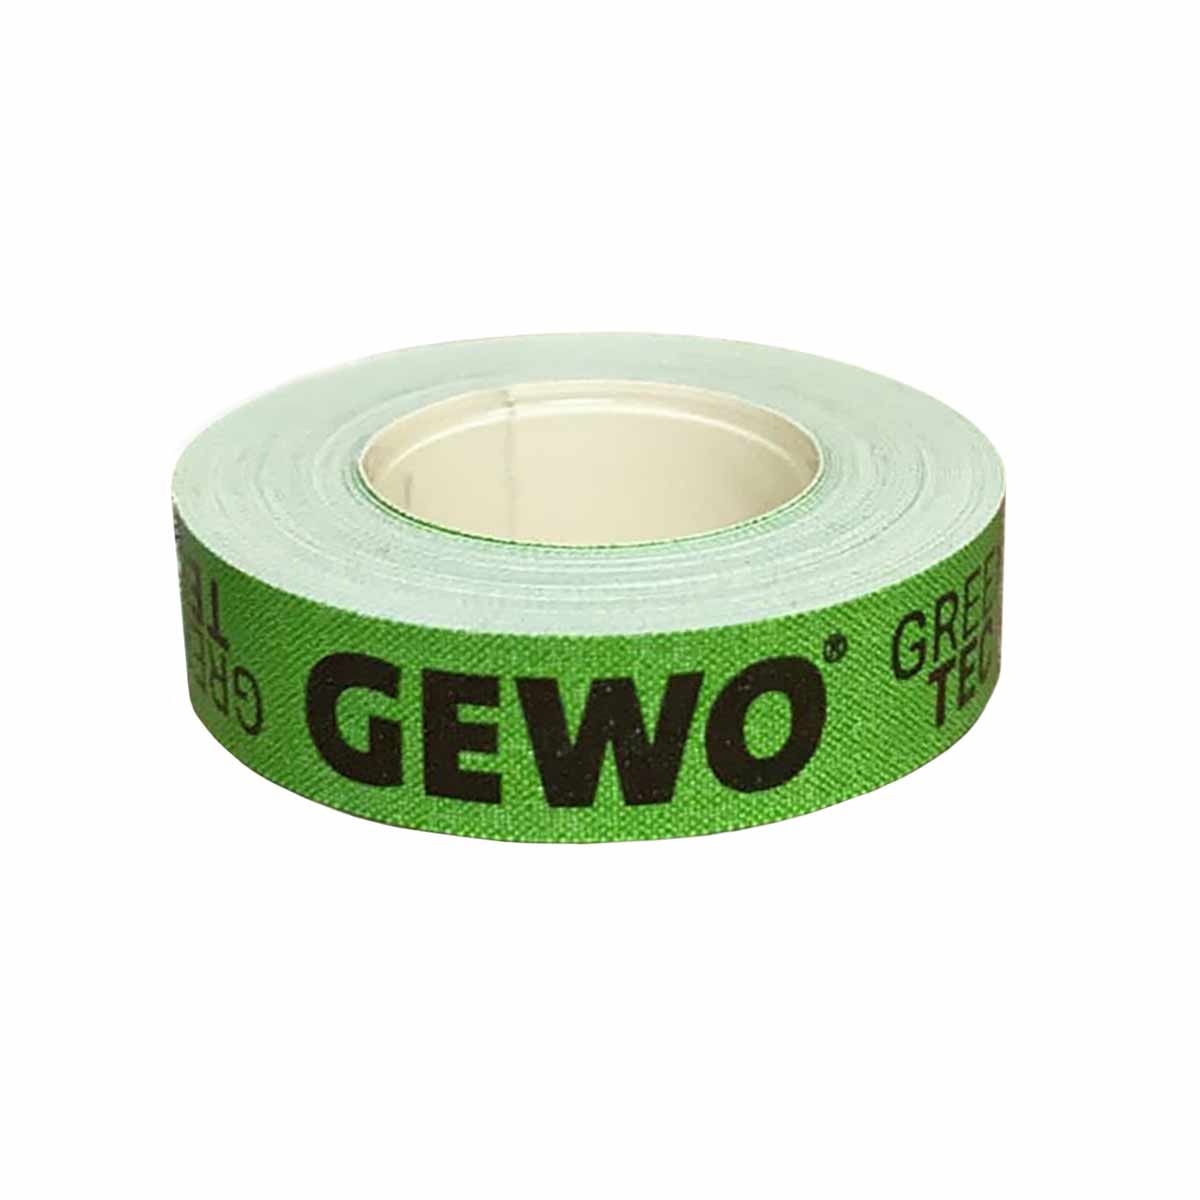 GEWO Edge Tape Green-Tec12mm/5m green/black